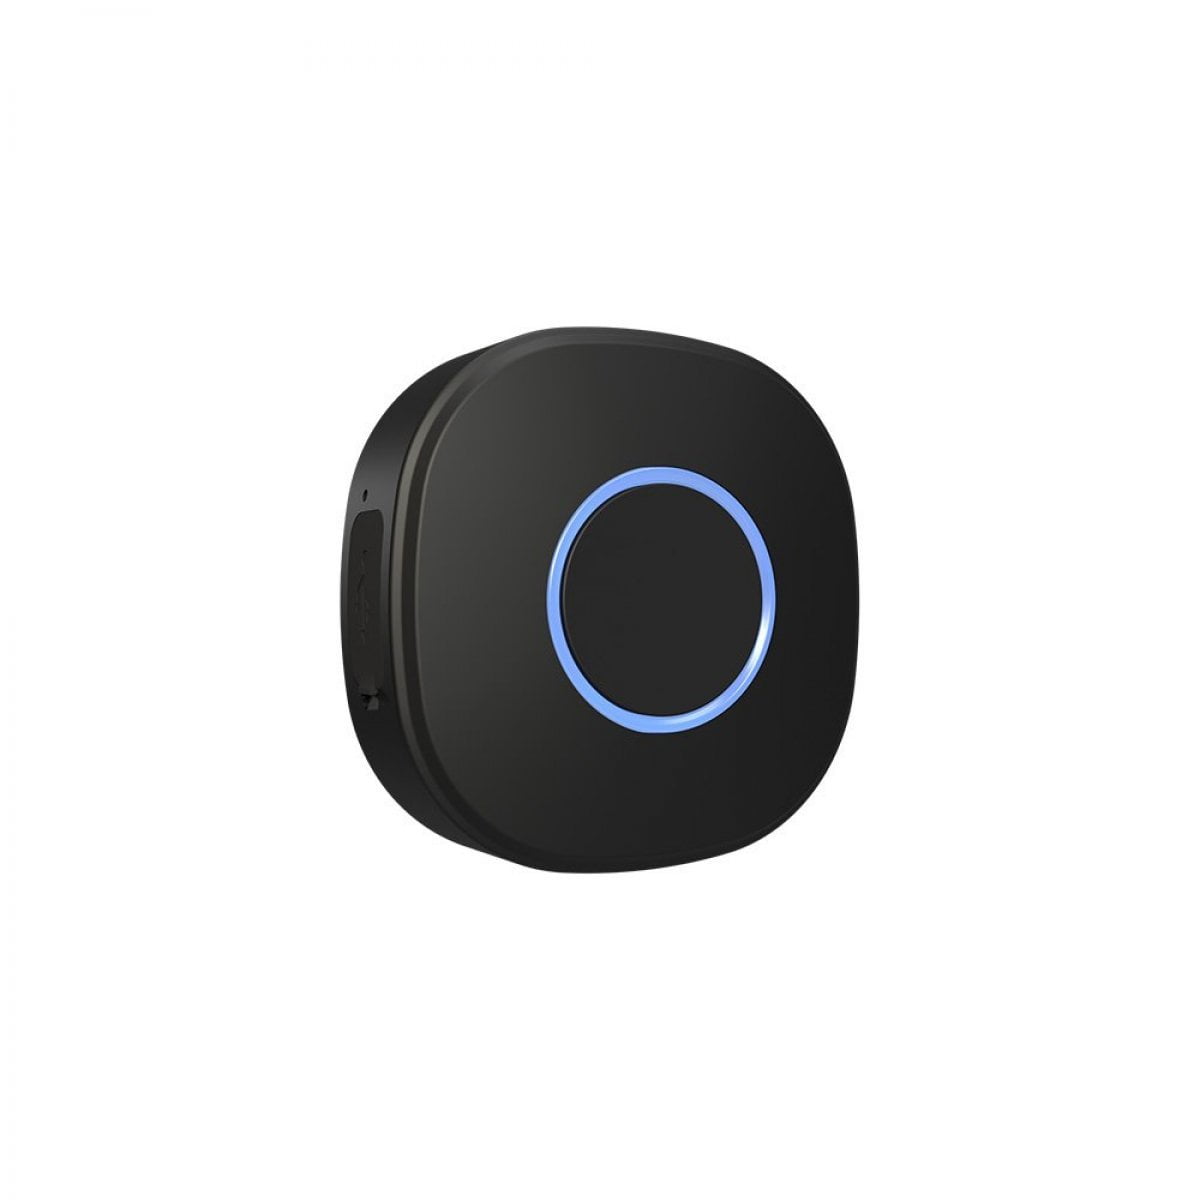 Shelly Button 1 vezeték nélküli, WiFi-s okos távirányító gomb fekete